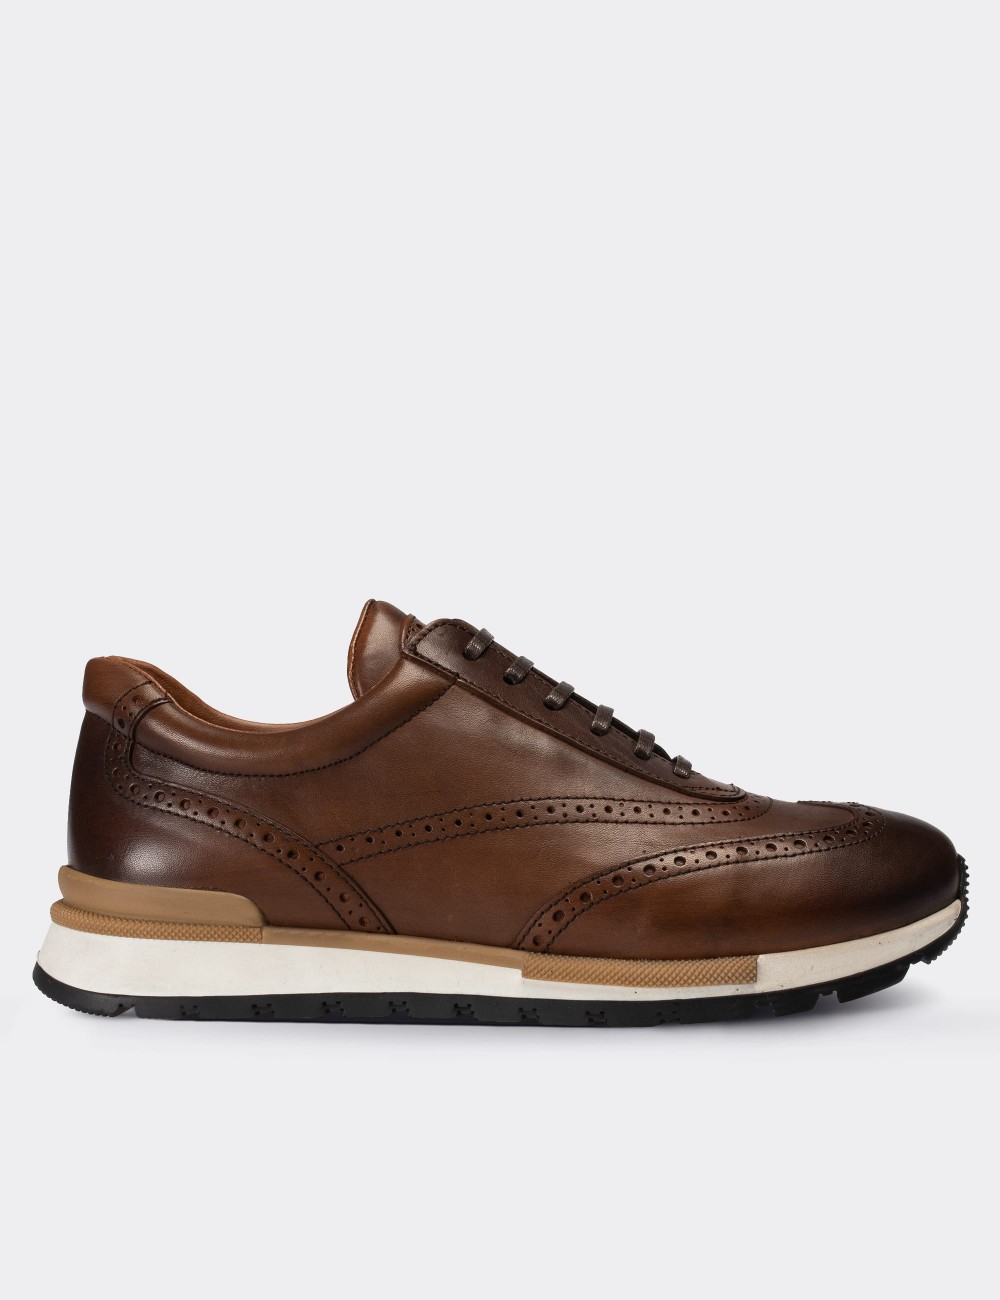 Tan  Leather Sneakers - 00750MTBAT02